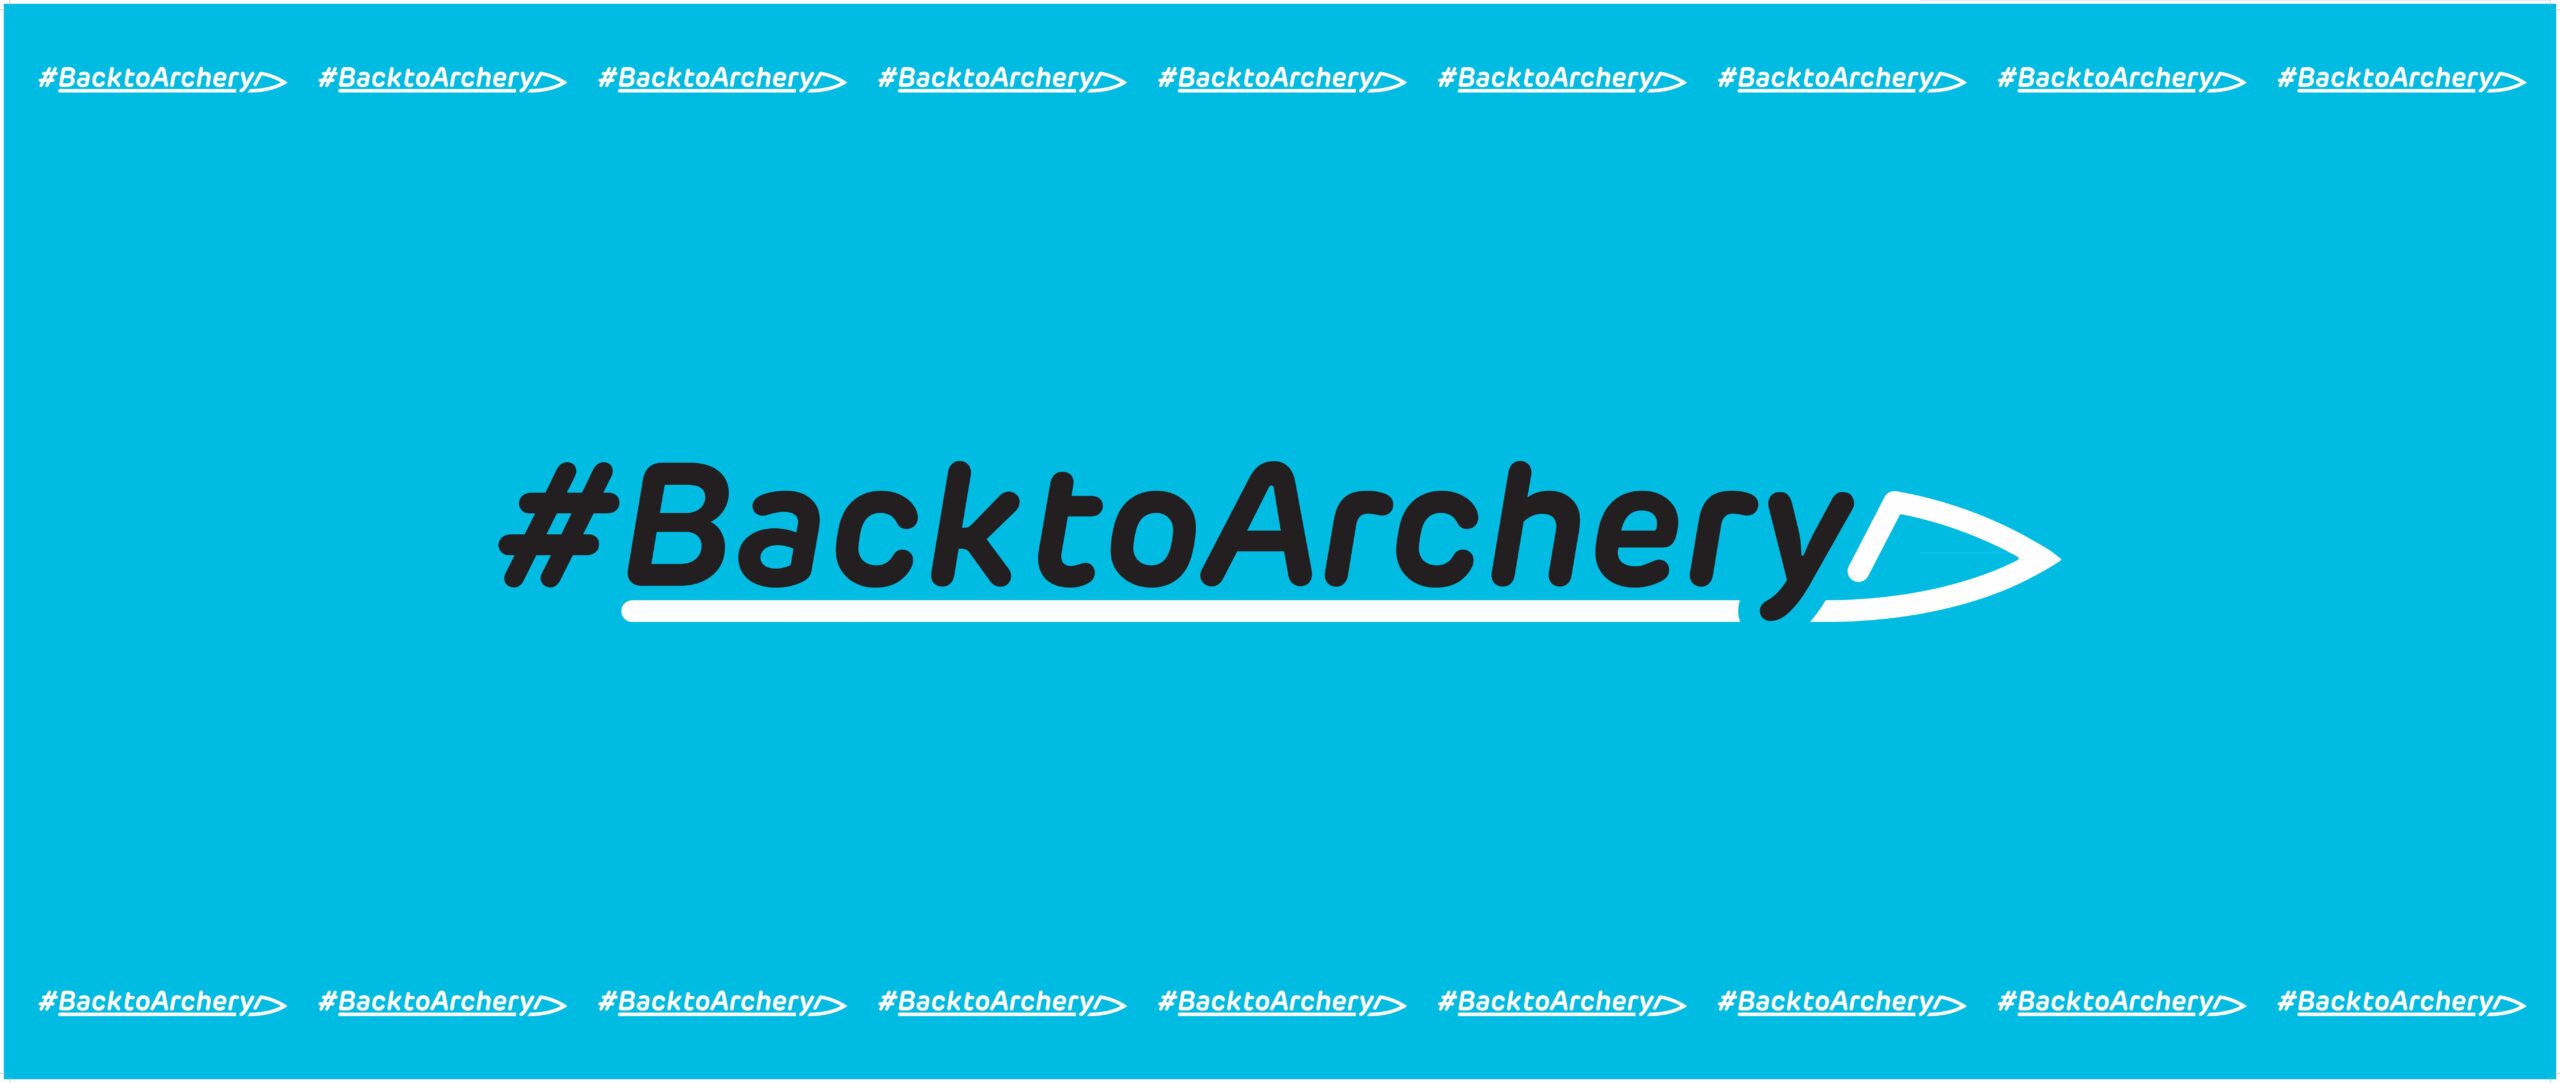 NHB: Back to Archery